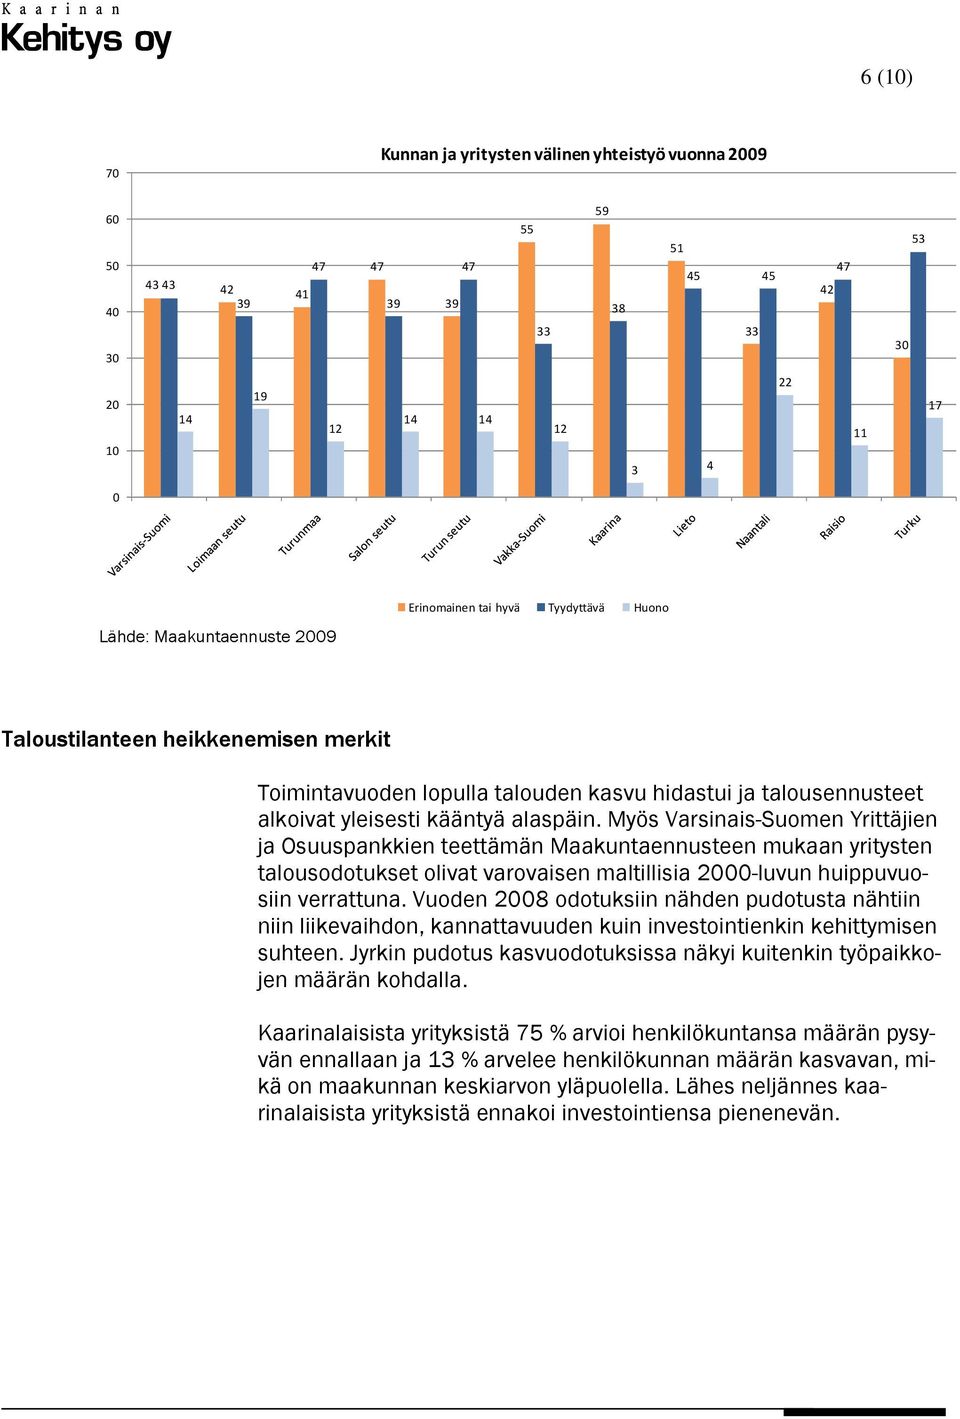 Myös Varsinais-Suomen Yrittäjien ja Osuuspankkien teettämän Maakuntaennusteen mukaan yritysten talousodotukset olivat varovaisen maltillisia 2-luvun huippuvuosiin verrattuna.